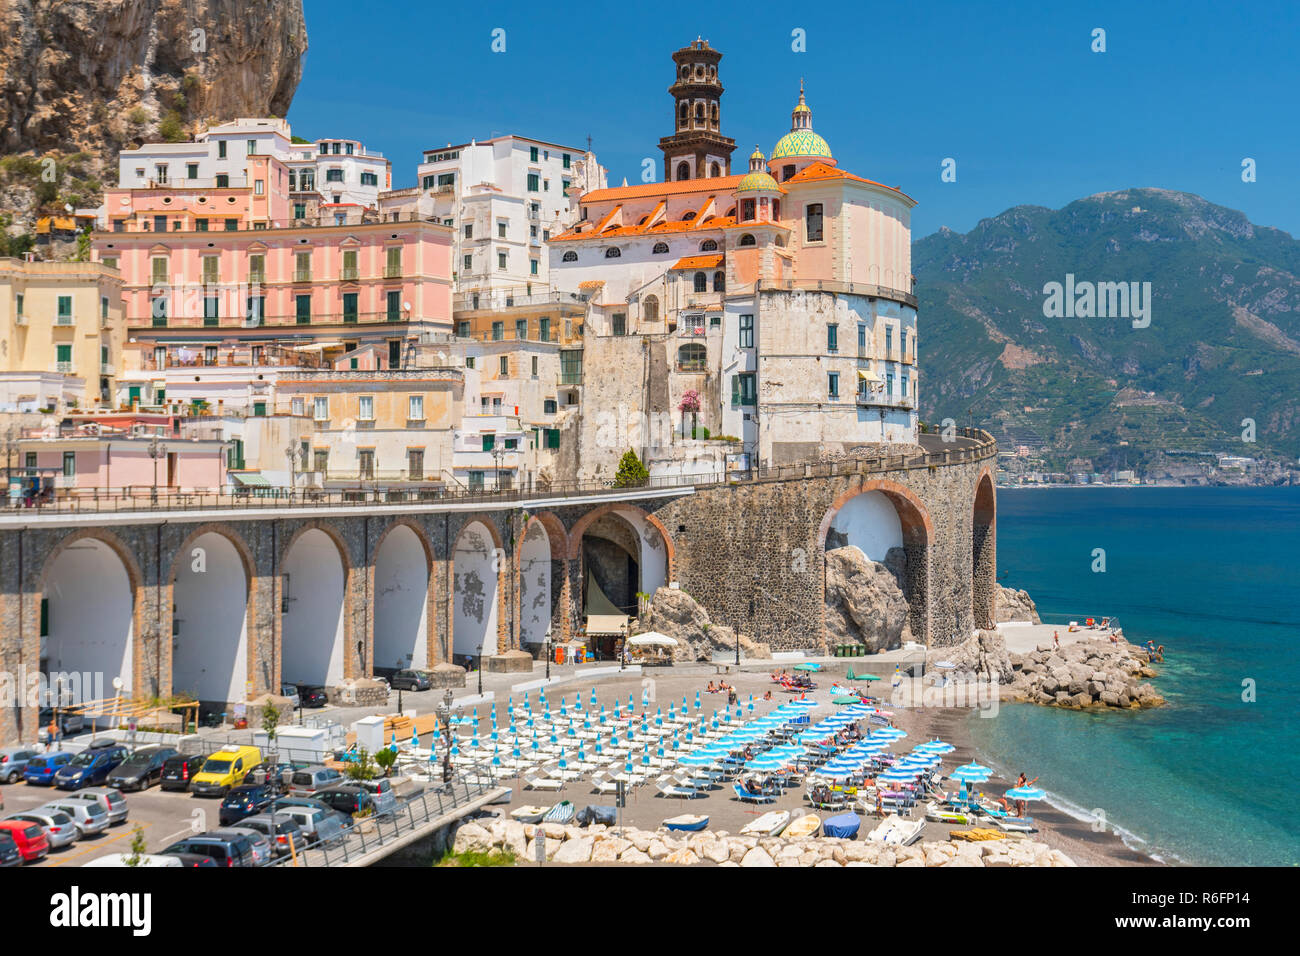 Blick von der schönen Stadt Atrani an der berühmten Amalfiküste und Golf von Salerno, Kampanien, Italien Stockfoto